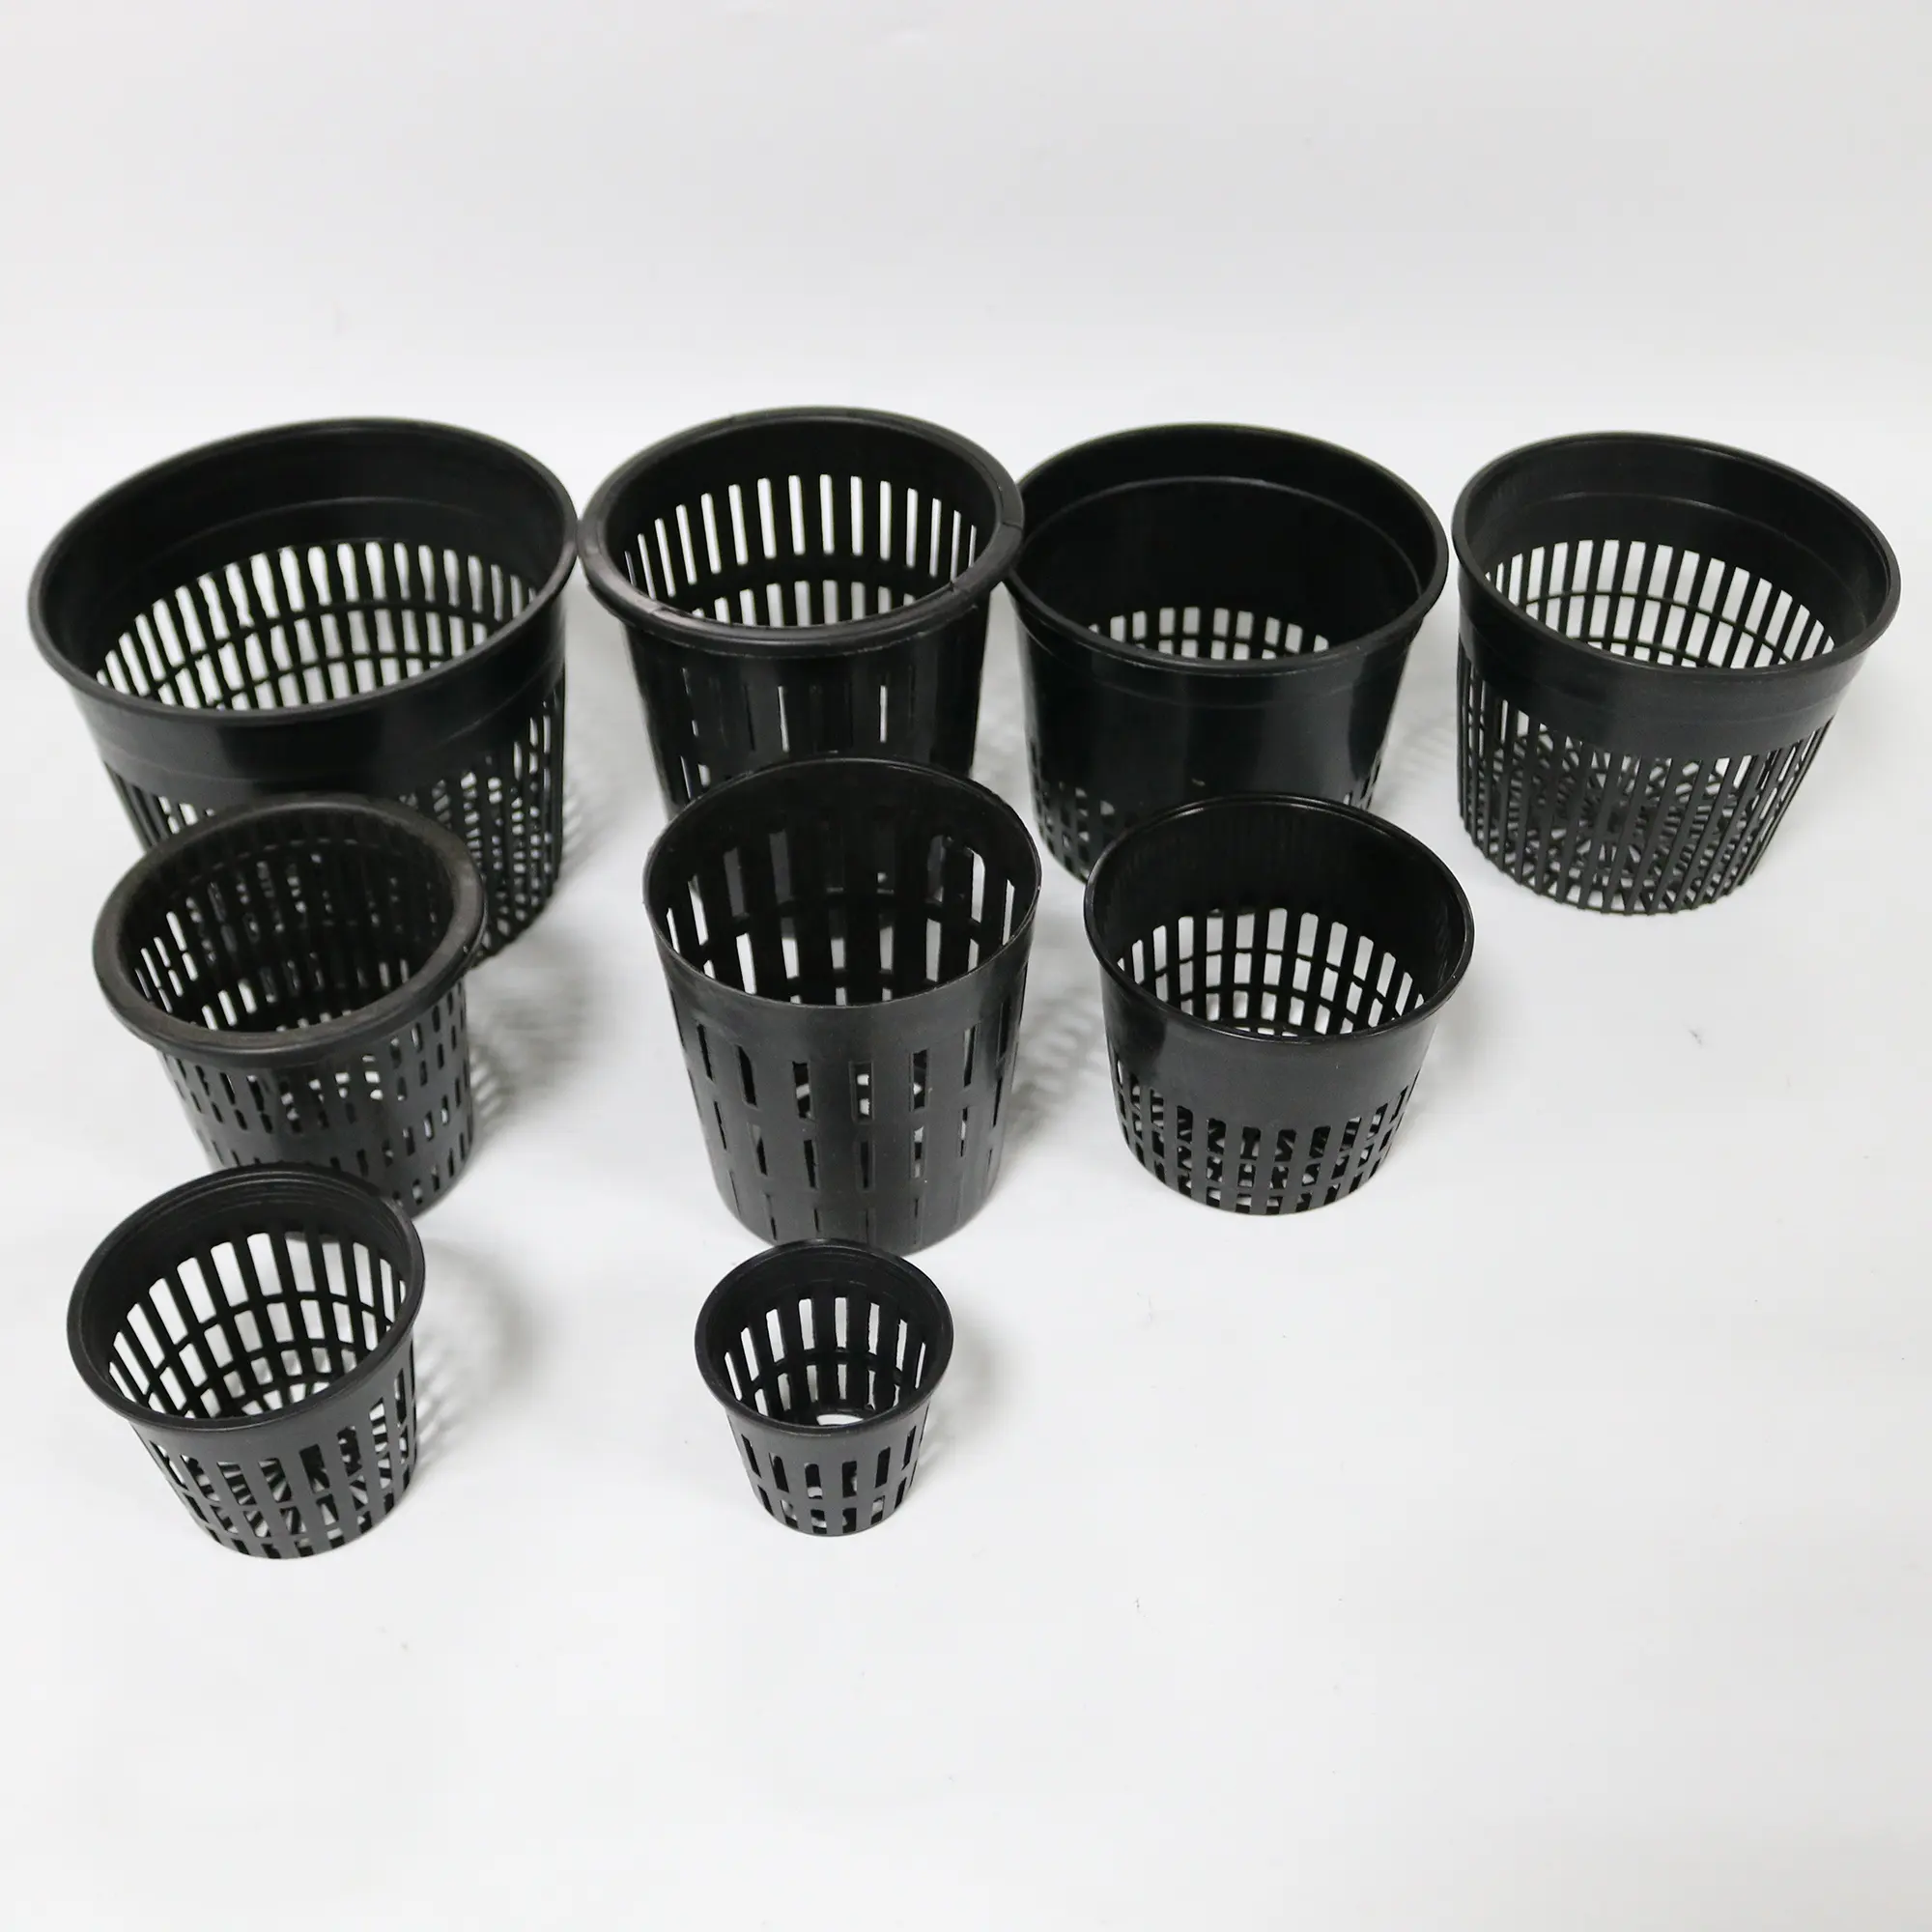 Hydrokultur Tassen Net Töpfe Tassen mit Selbst-Bewässerung Kapillare Wasser, Schlitz Ineinander, Schwarz Mini Rouns net Topf